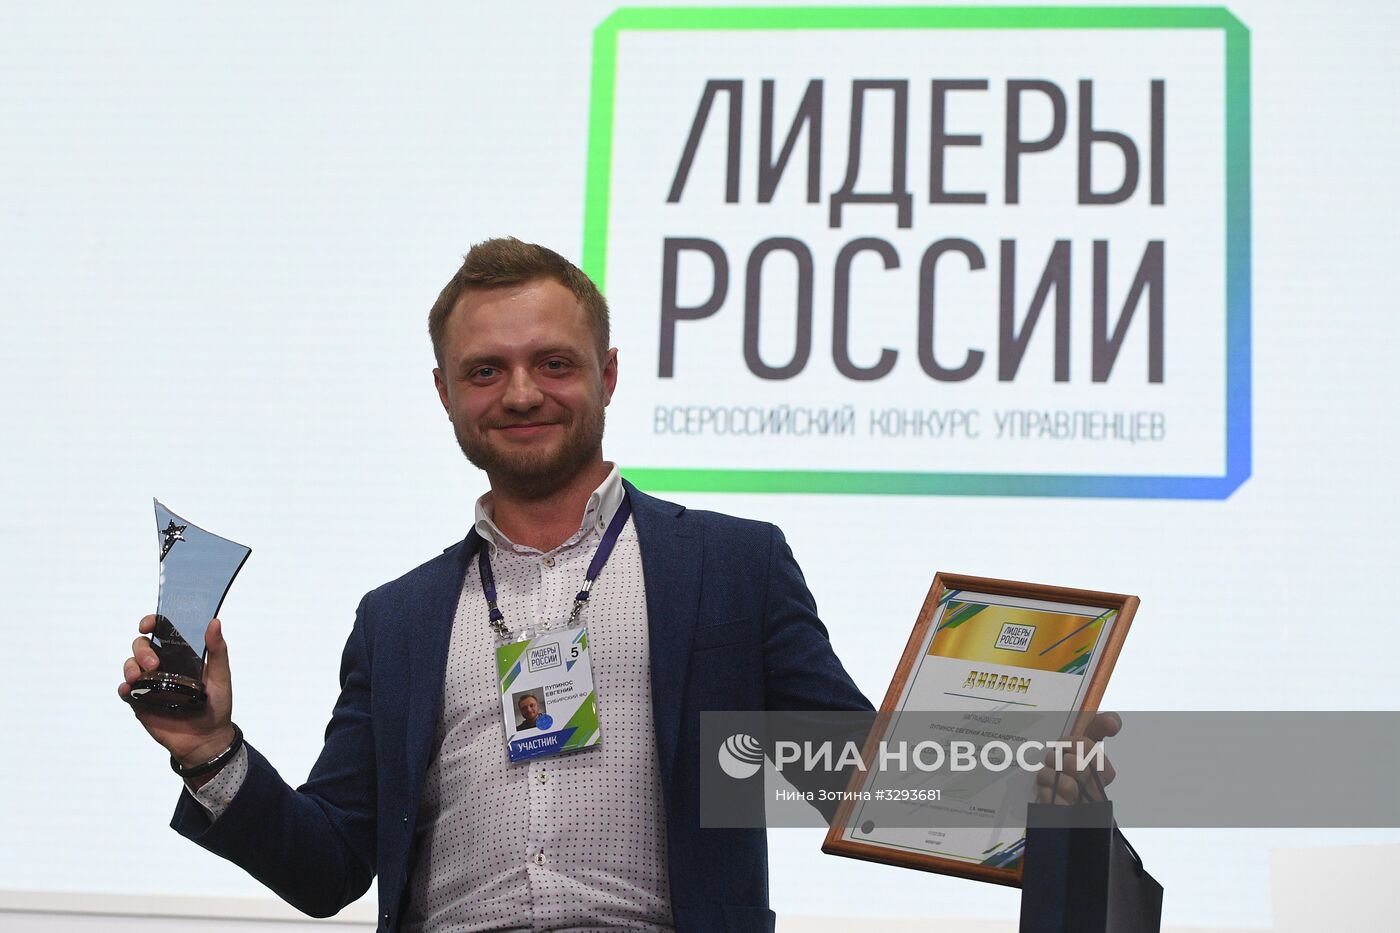 Закрытие финала конкурса "Лидеры России" в Сочи